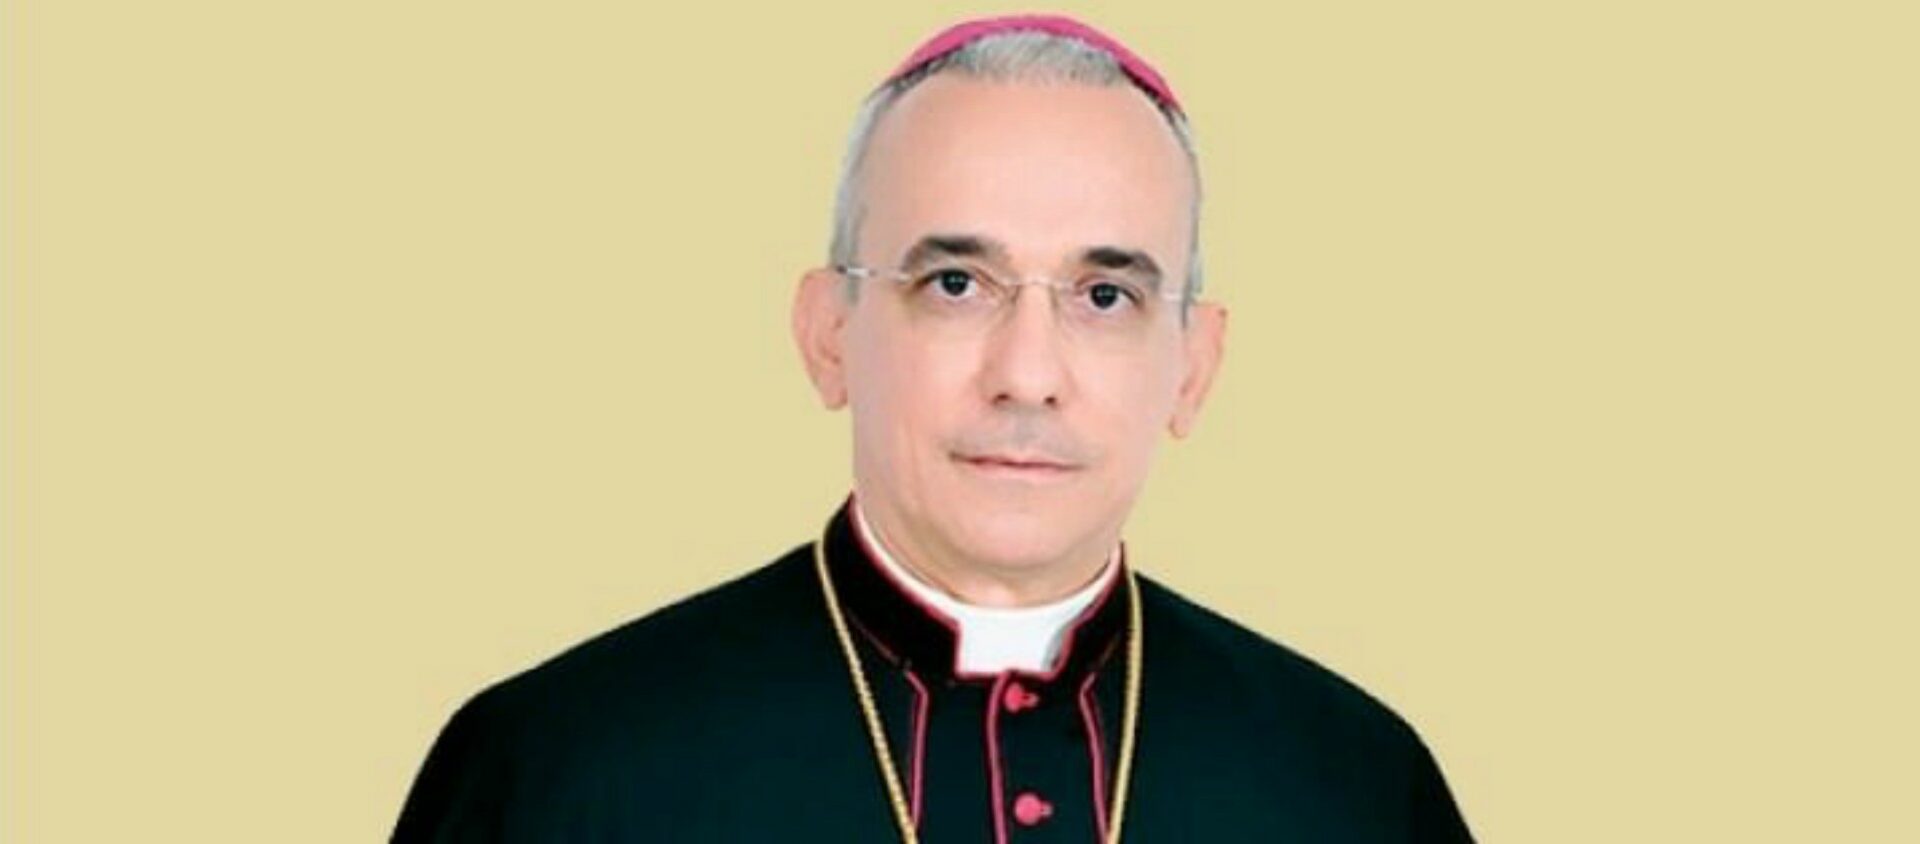 Mgr Henrique Soares da Costa, évêque de Palmares, au Nordeste brésilien, est décédé du Covid-19  à l'âge de 57 ans | www.diocesepalmares.com.br